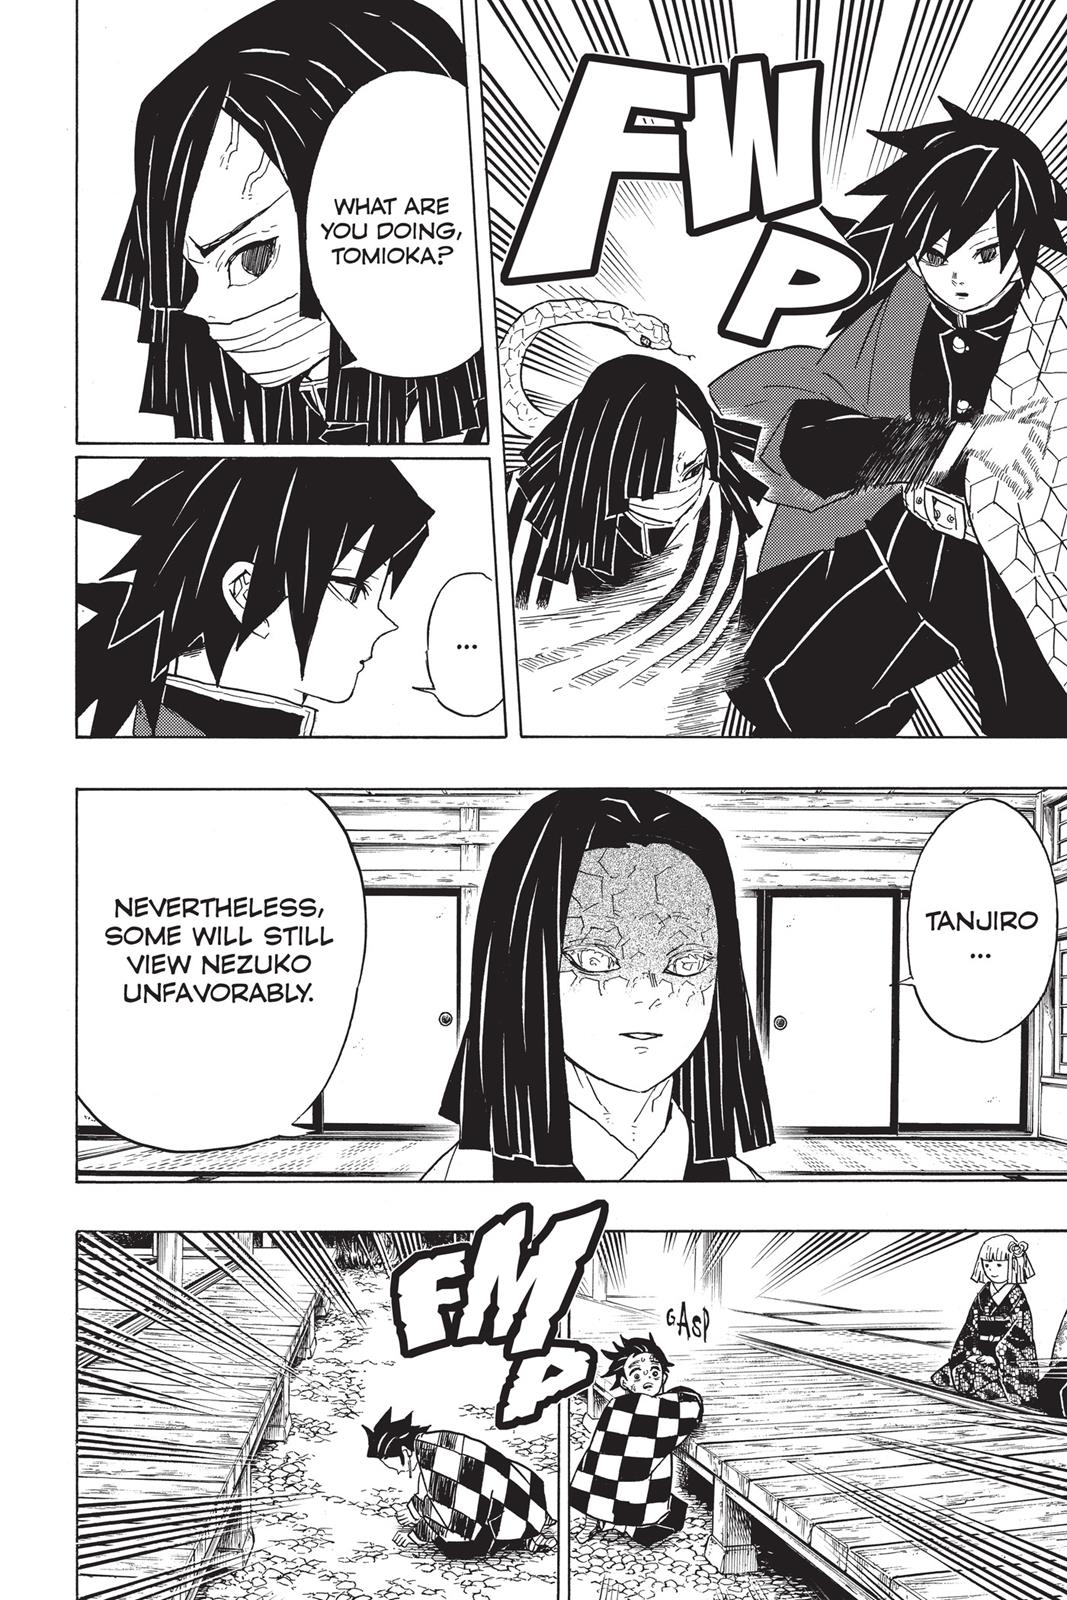 Demon Slayer Manga Manga Chapter - 47 - image 11